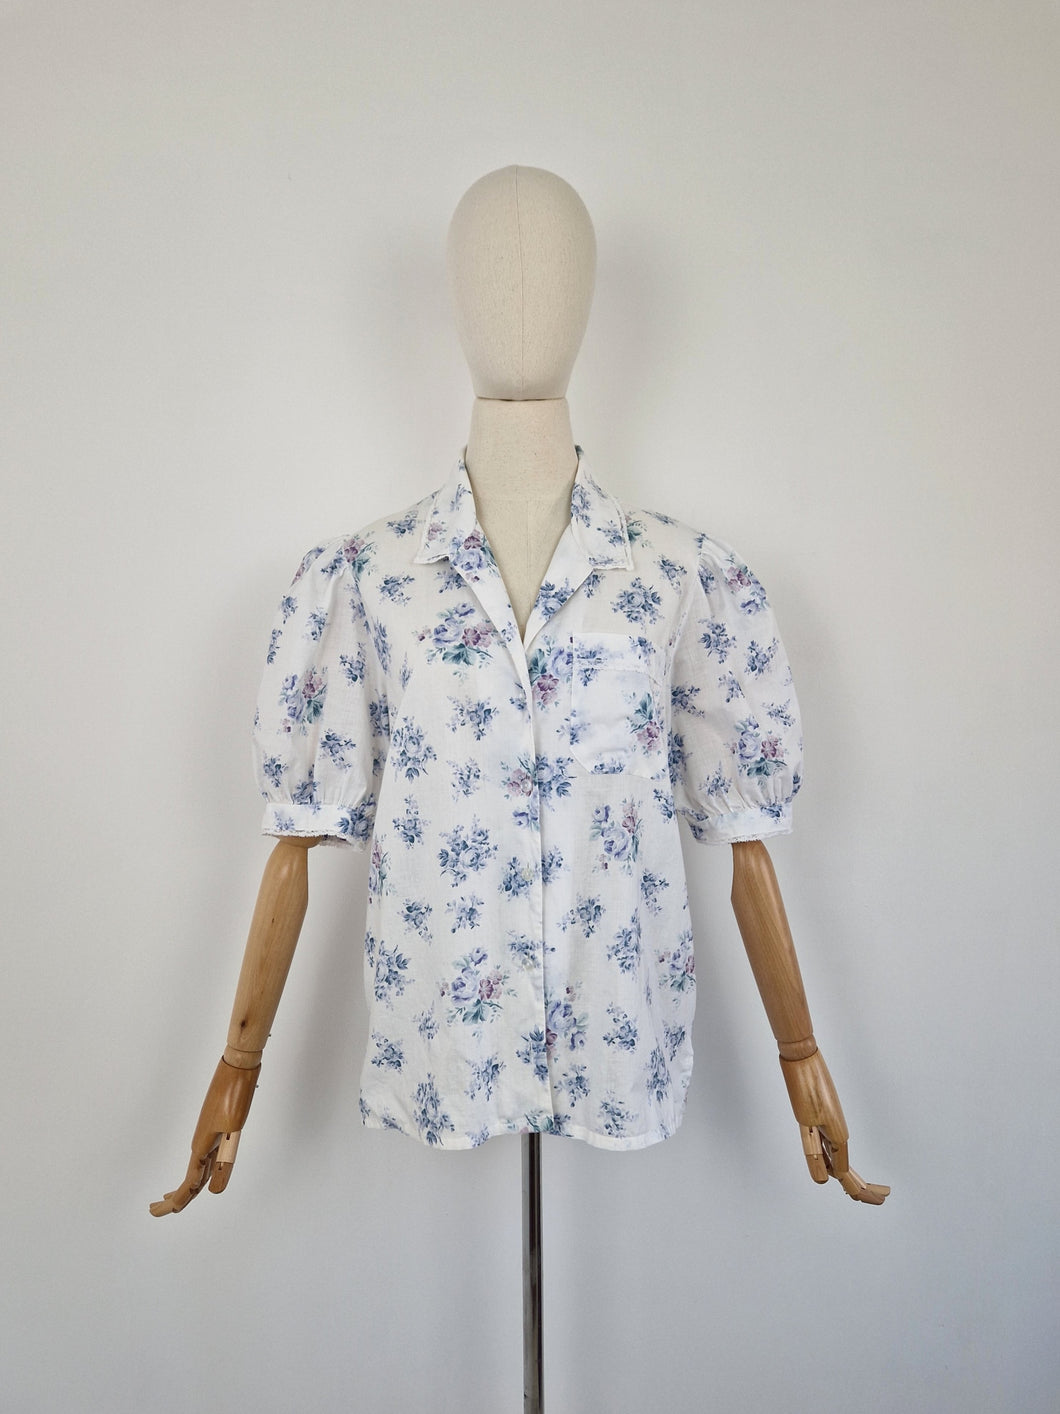 Vintage 90s Laura Ashley floral blouse